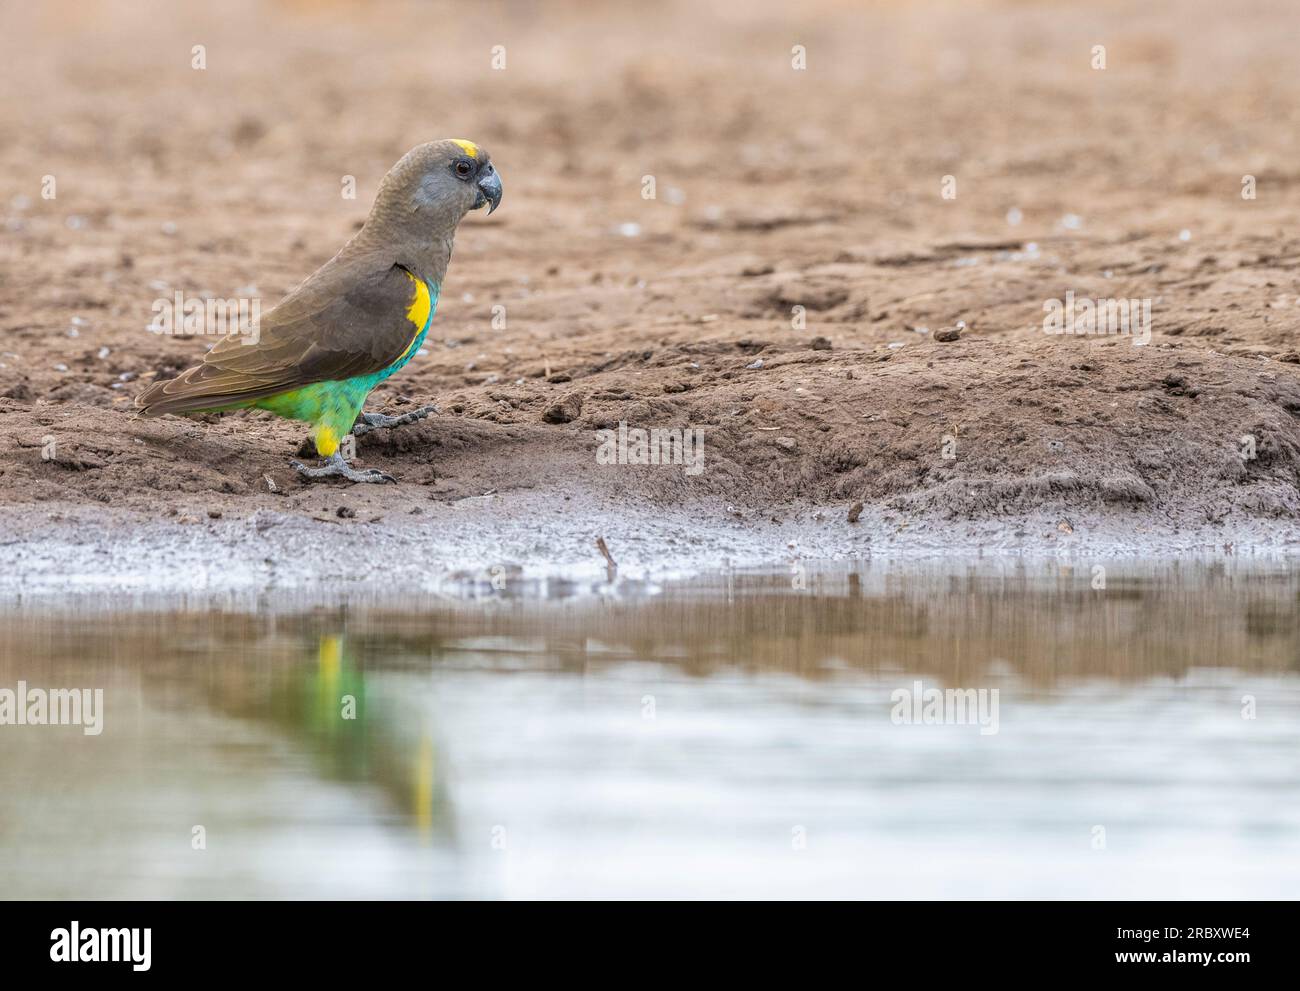 Meyer's Parrot at Mashatu Euphorbia Game Reserve in Botswana. Stock Photo